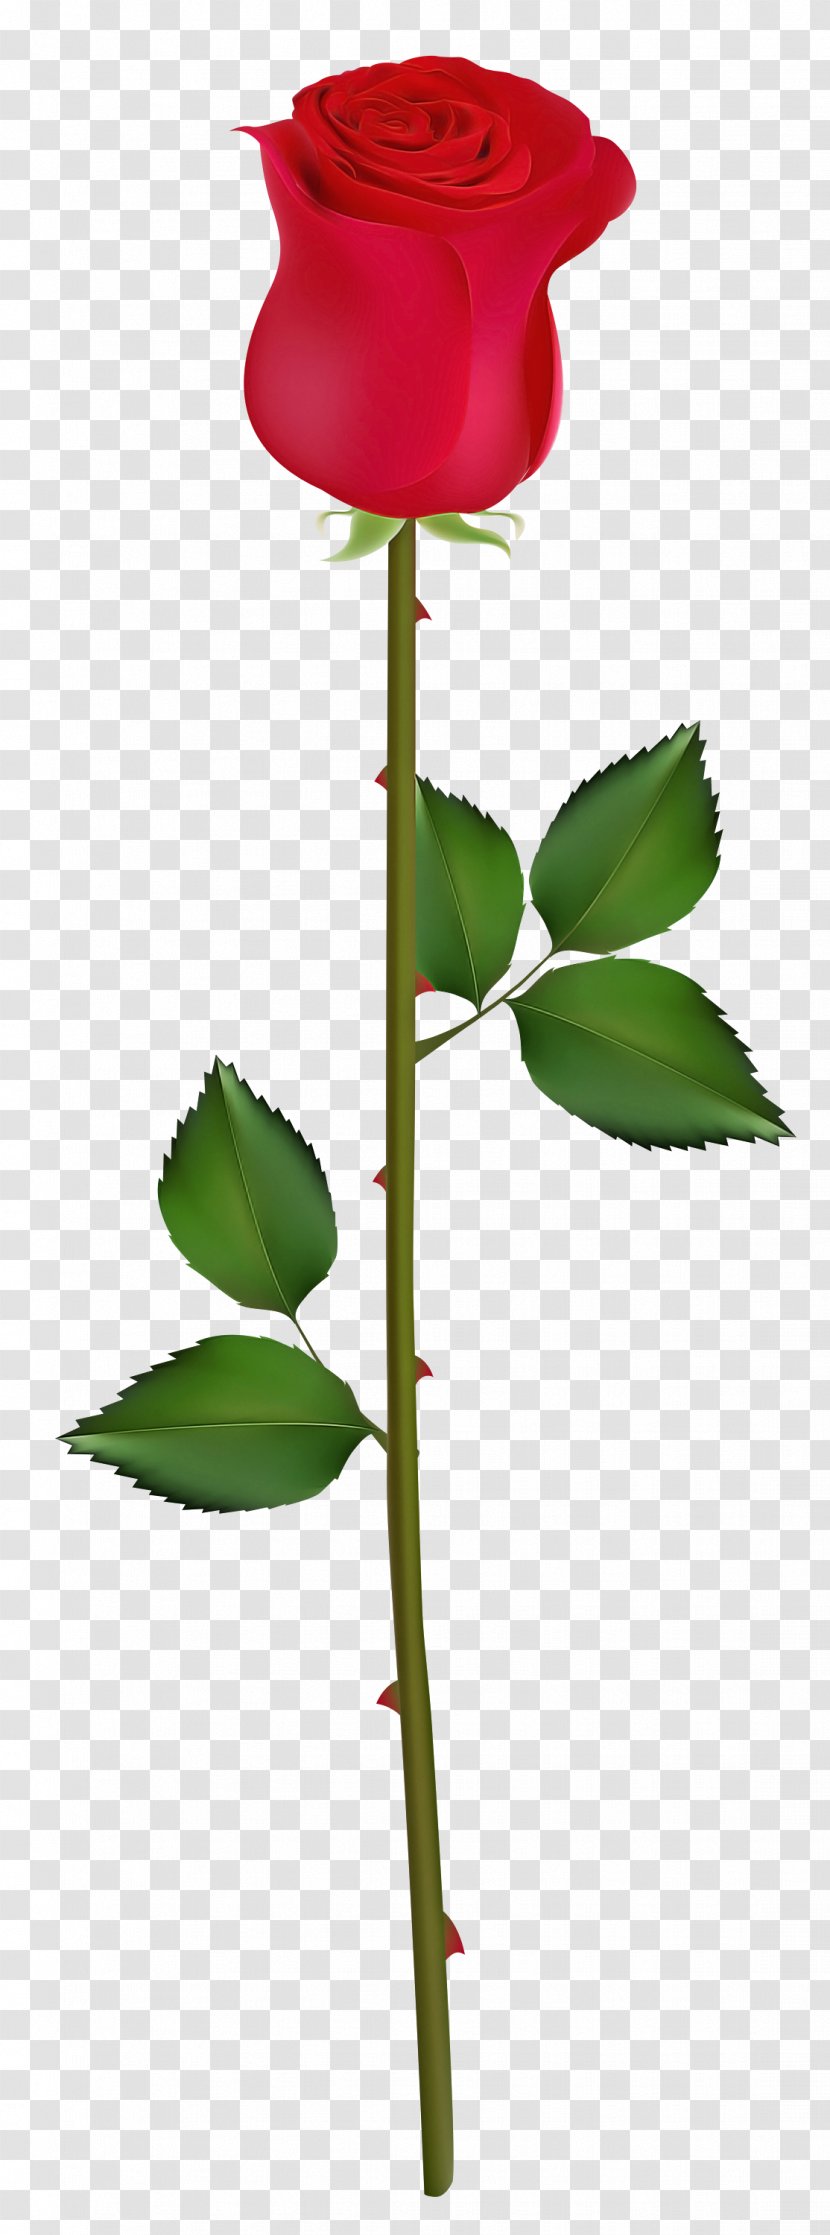 Rose - Flowering Plant - Bud Transparent PNG